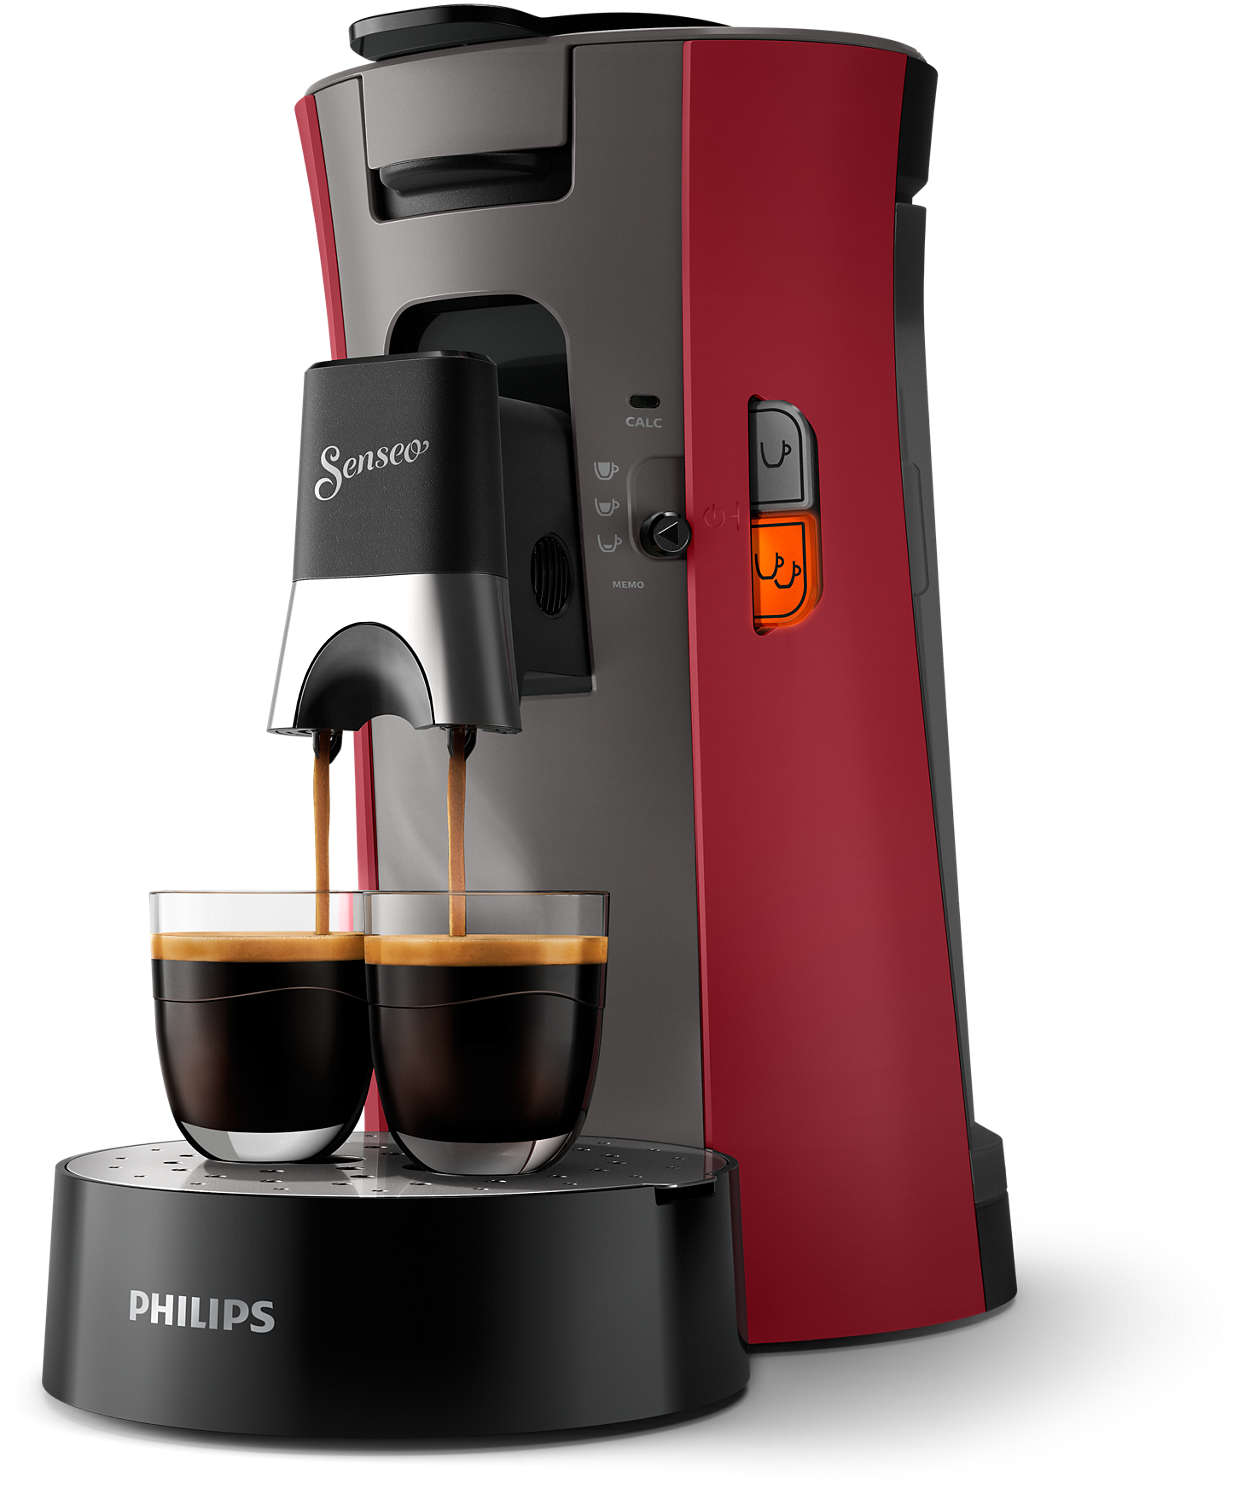 Rouge intense Philips CSA240/91 machine à café dosettes SENSEO select 